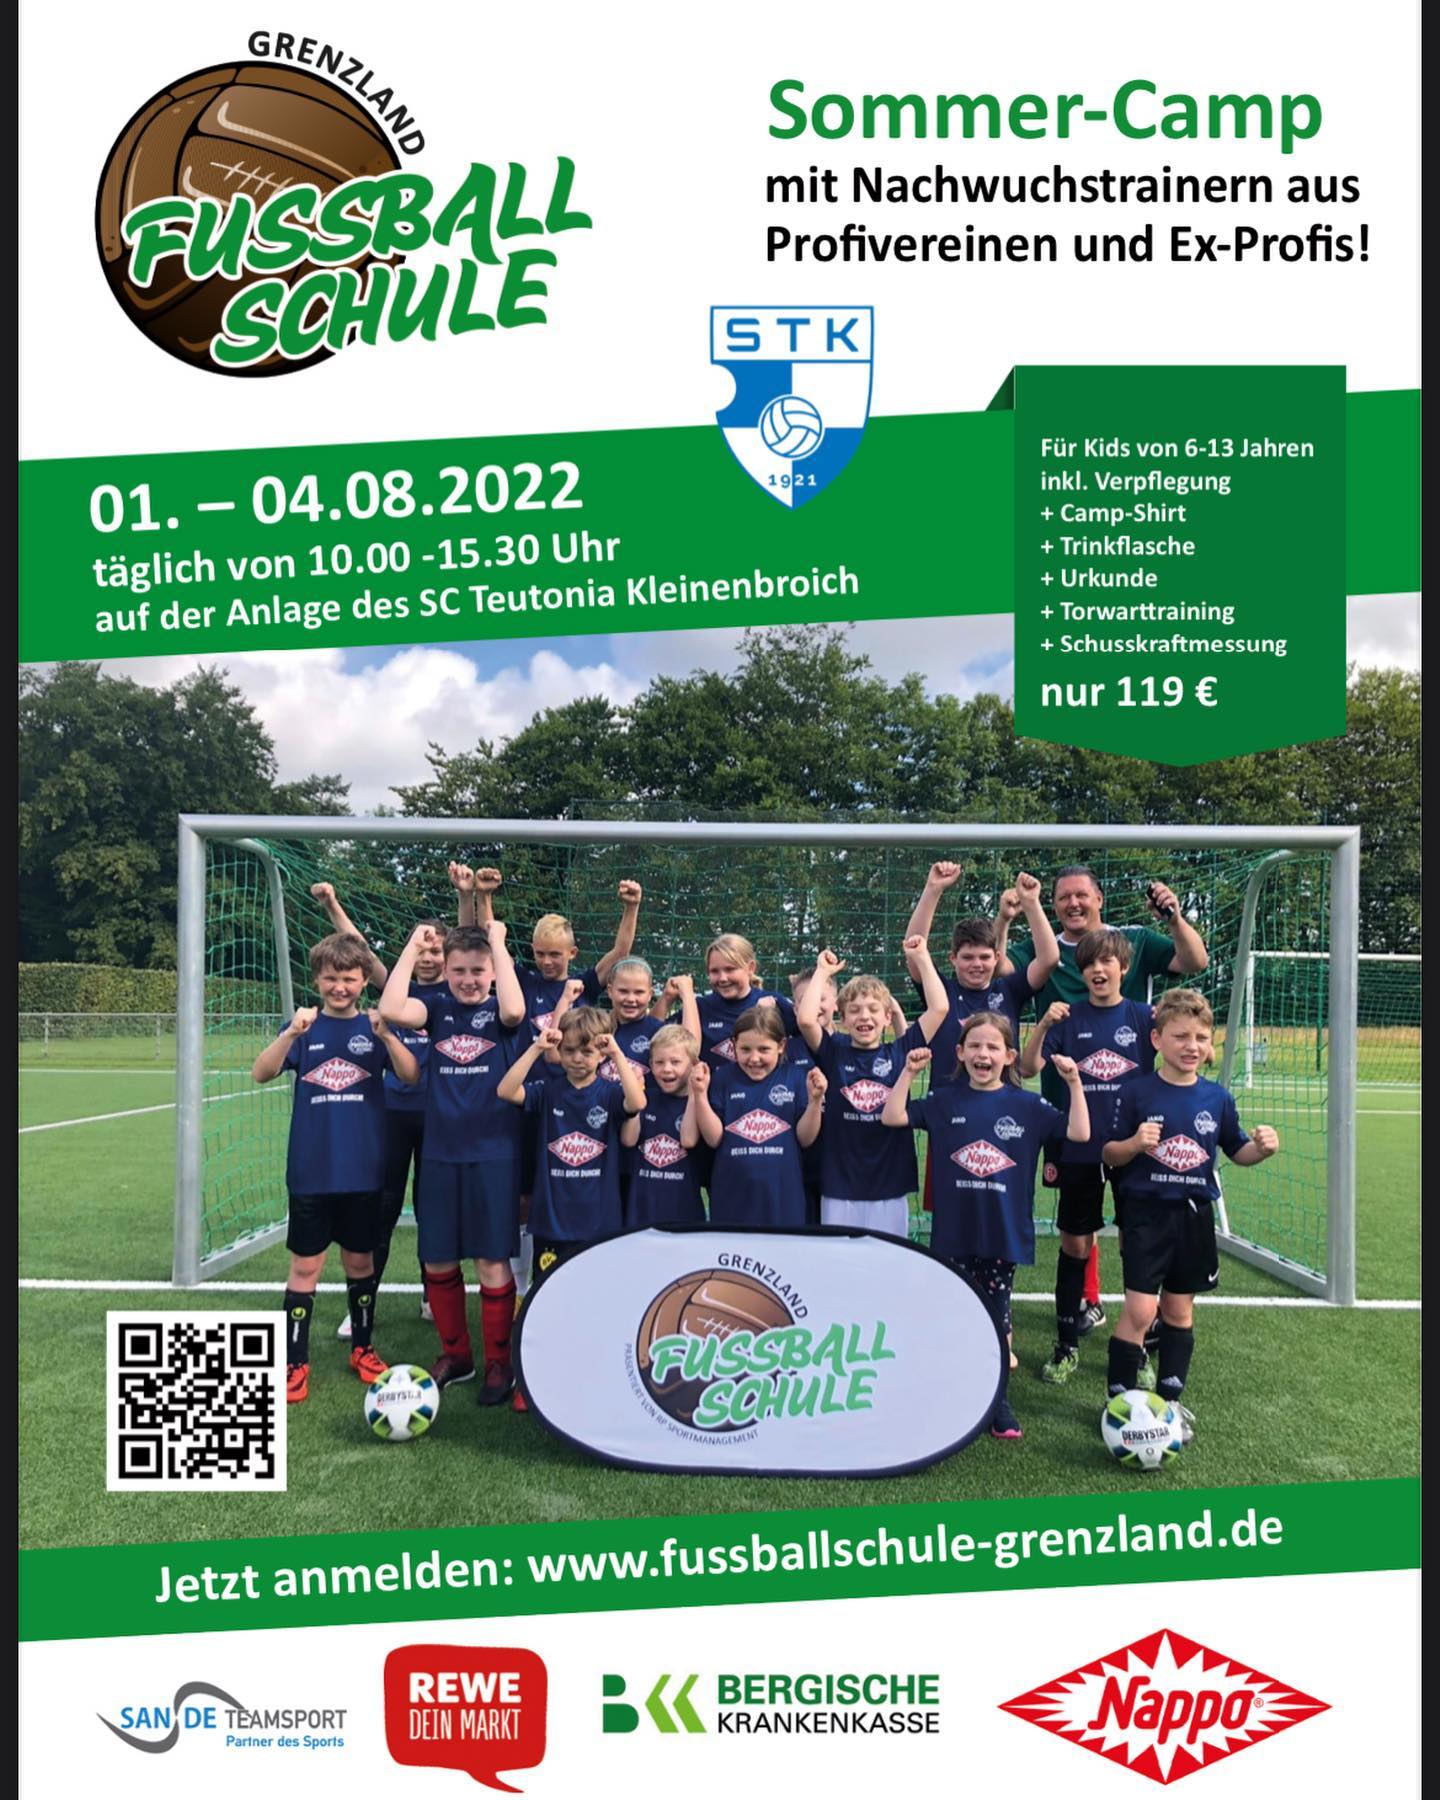 #jugend #sommercamp #training #kids #blauweiß #fussballschule #anmelden